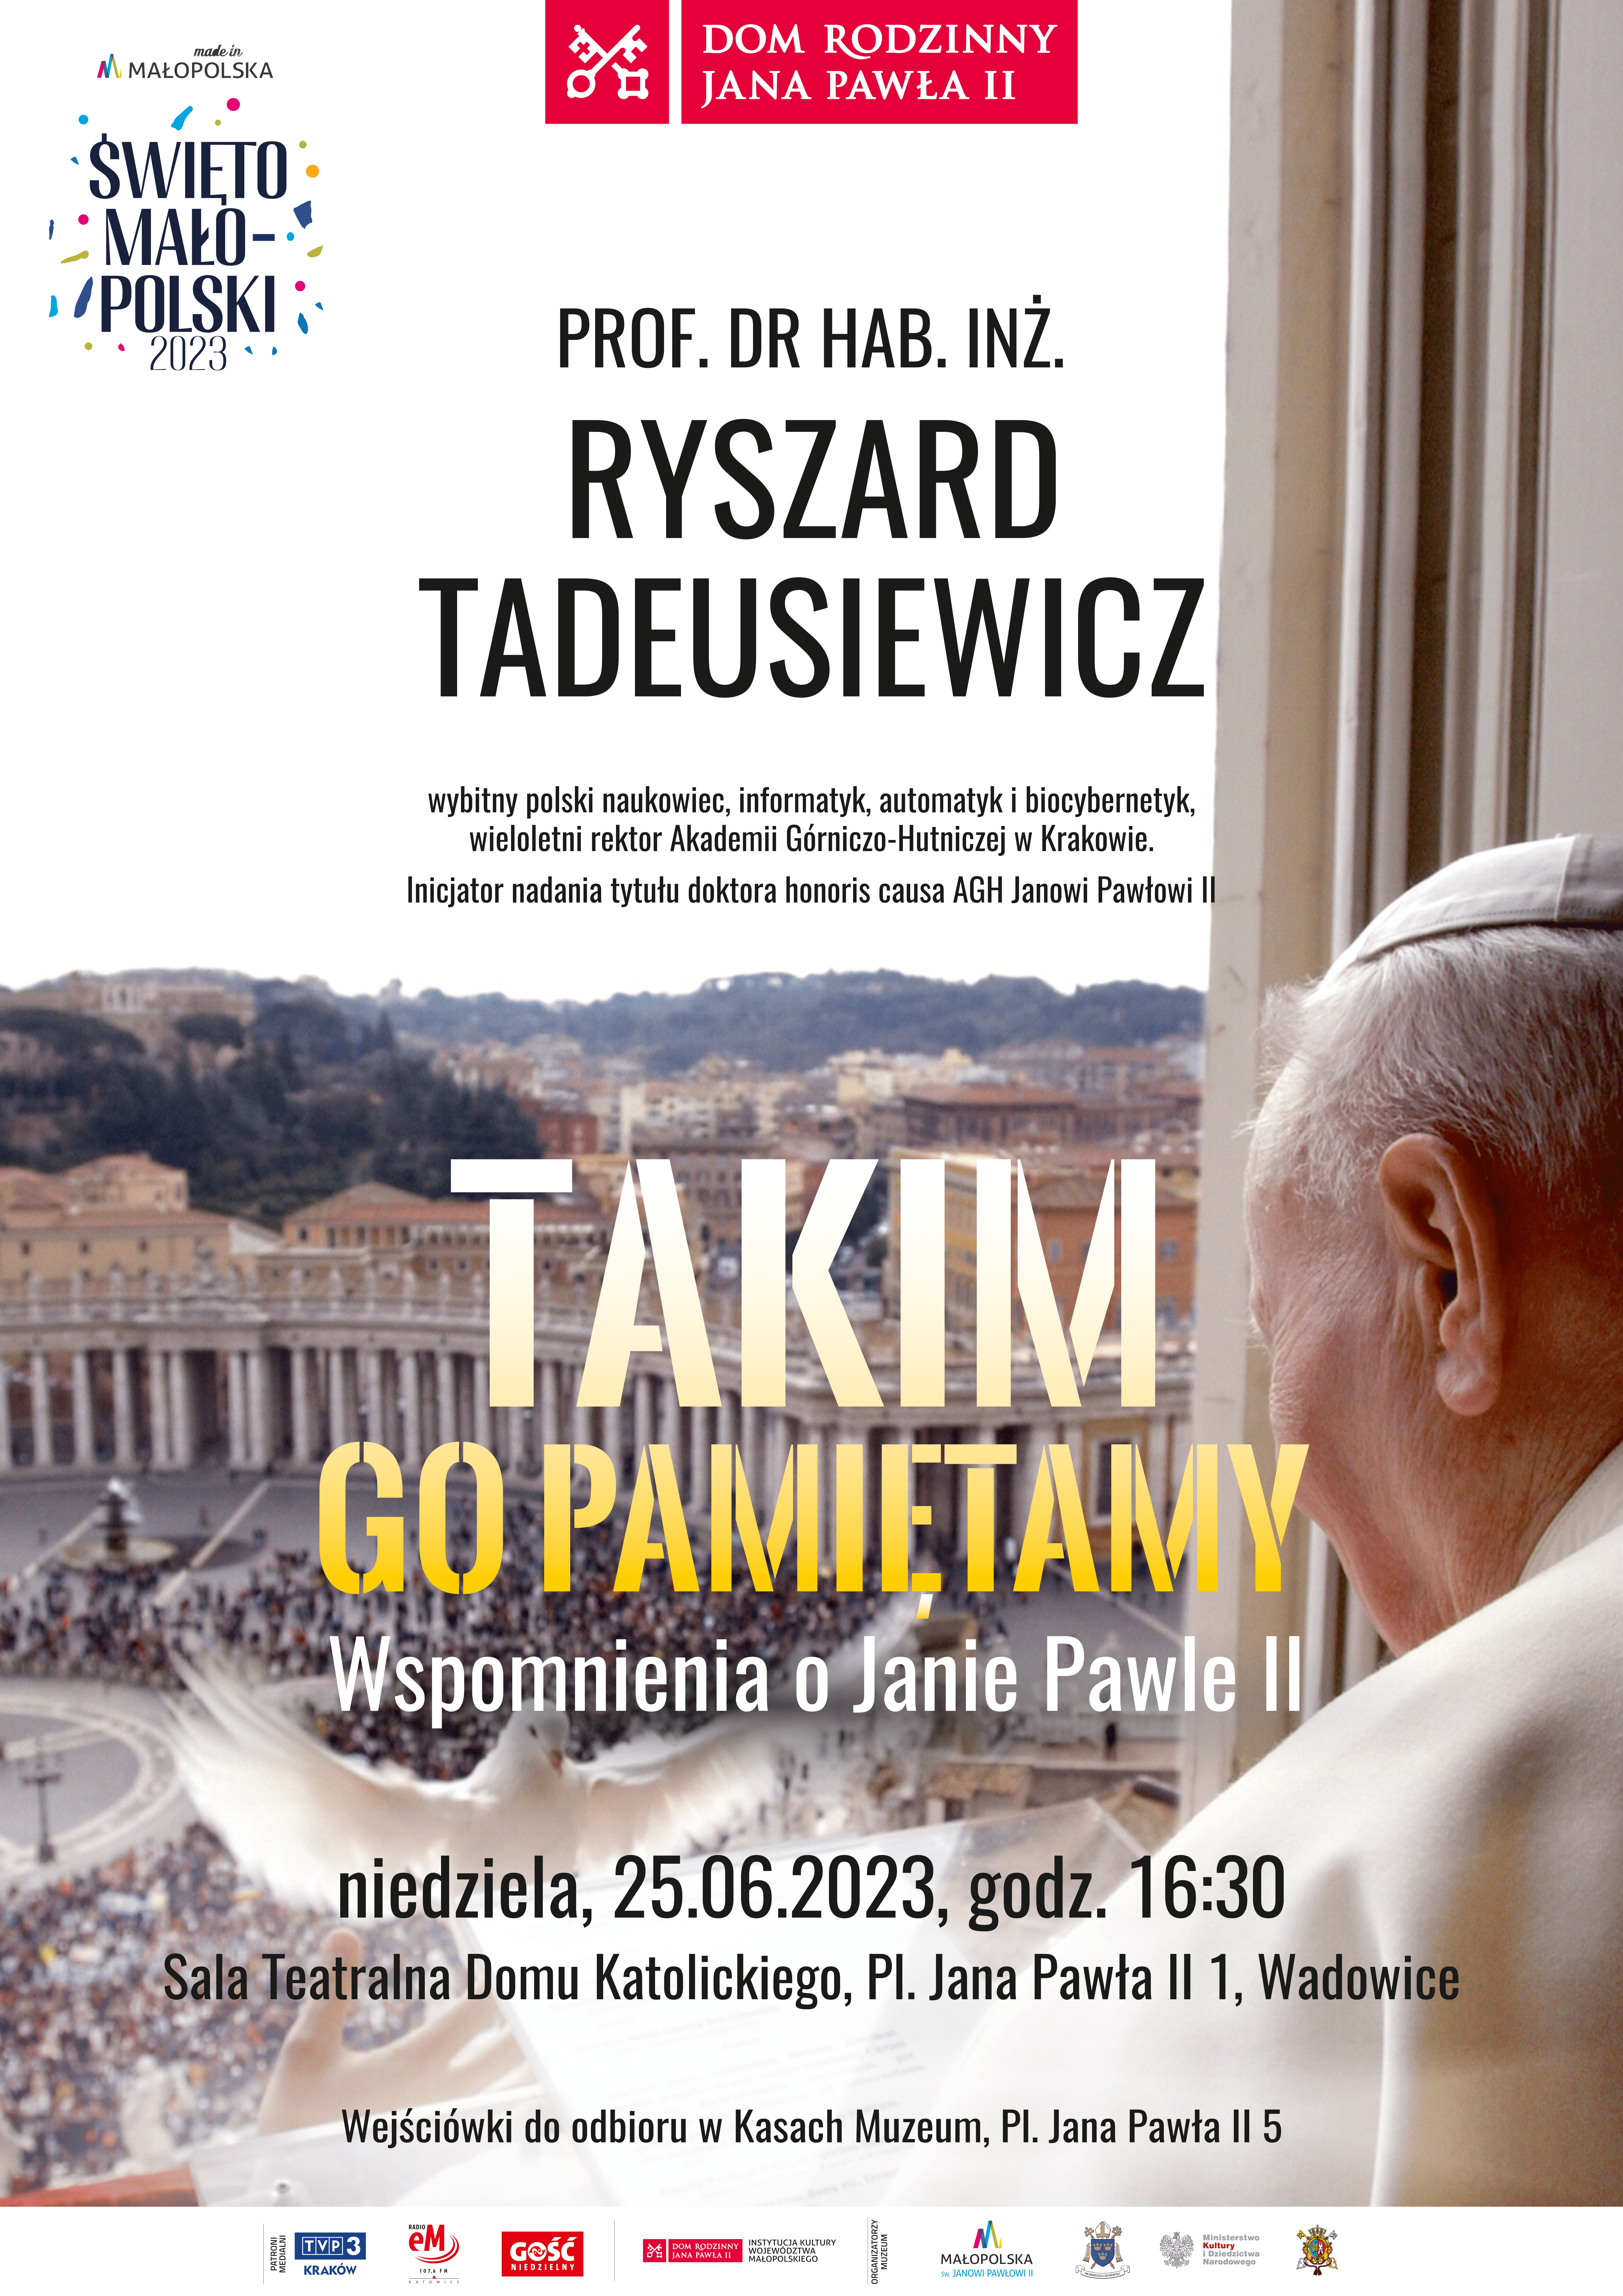 Spotkanie z prof. Ryszardem Tadeusiewiczem w Domu Rodzinnym Jana Pawła II